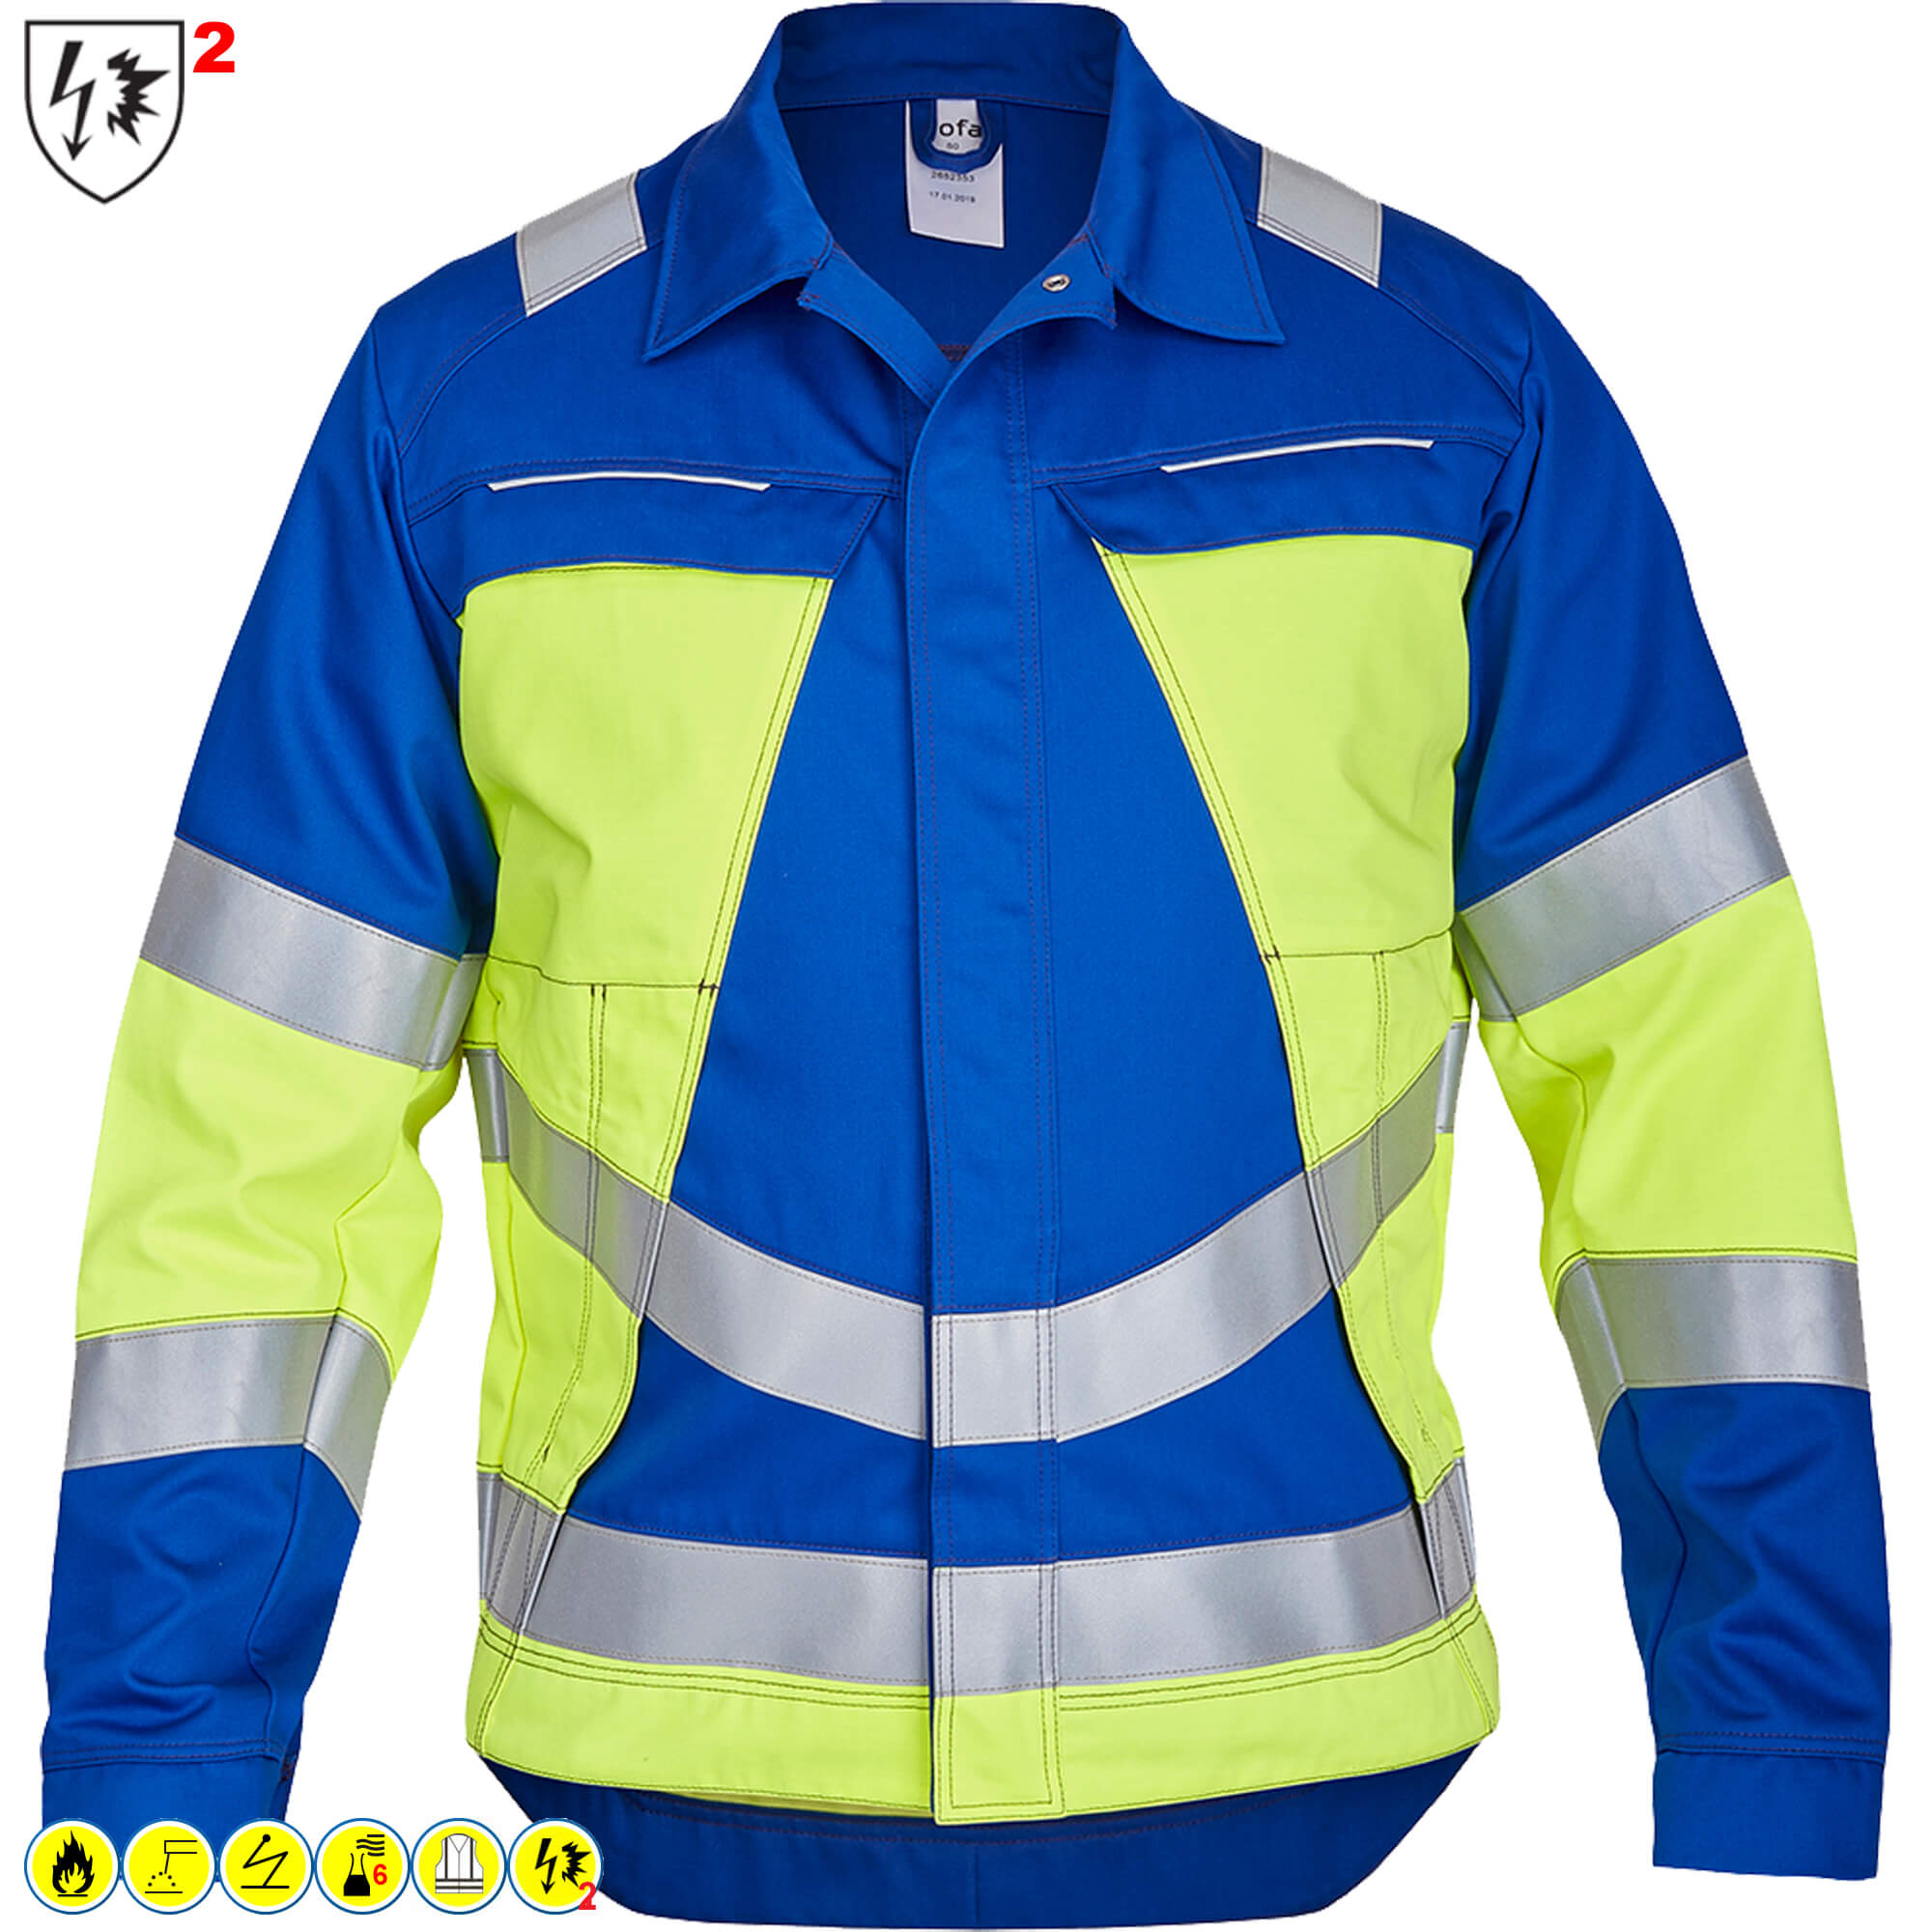 Rofa VIS-LINE Klasse 2, MultiNorm Warnschutzkleidung 6-fach zertifiziert, Arbeitskleidung mit Firmenlogo